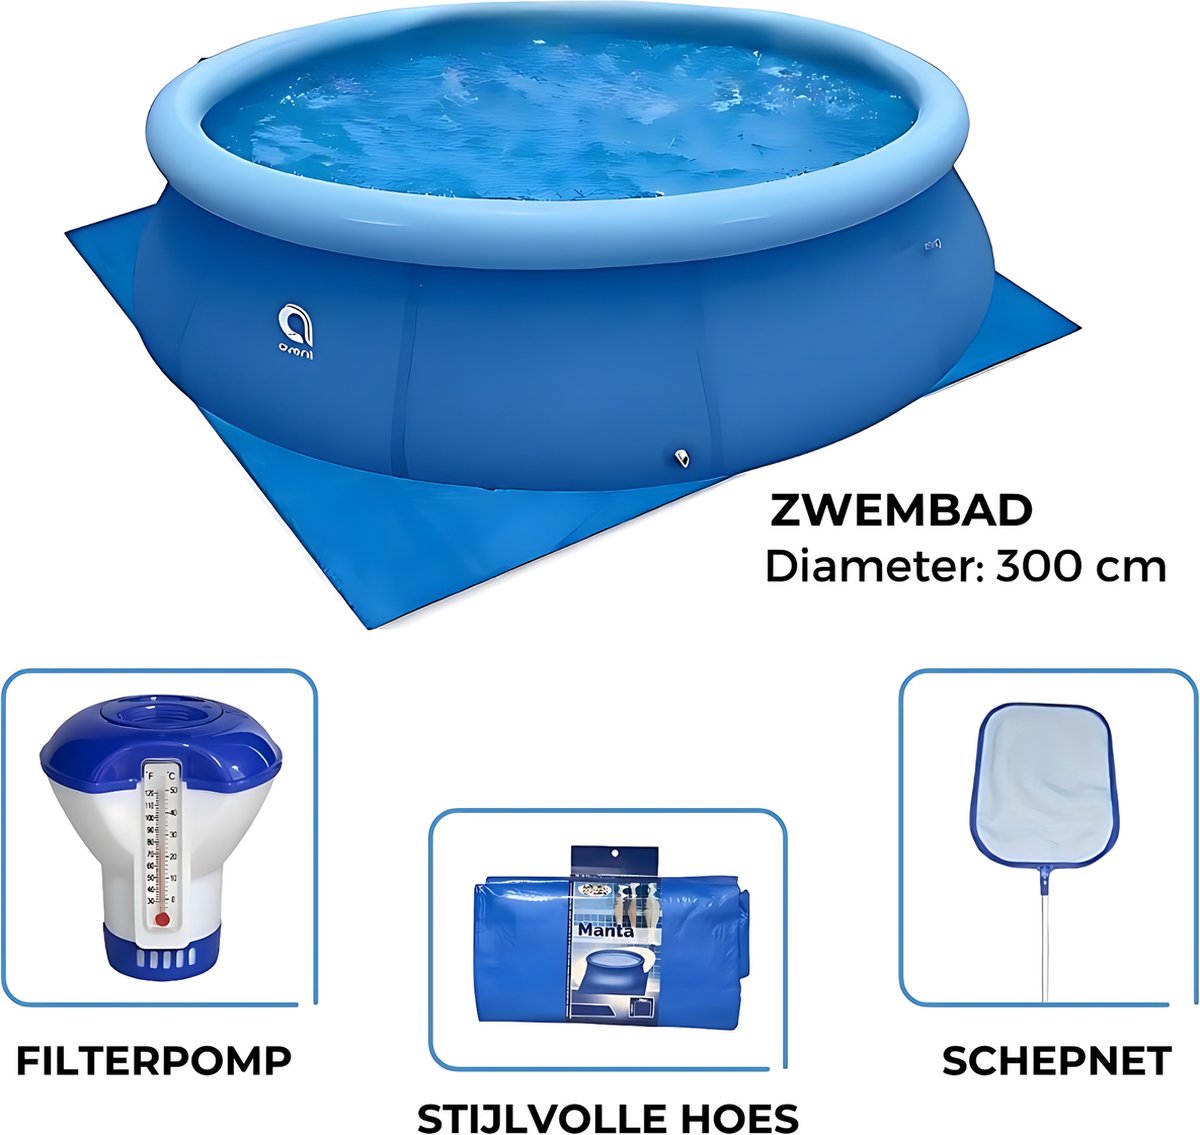 Avenli - Zwembad 300cm met Filterpomp - Afdekzeil - Chloordrijver - Schepnet en Gronddoek - Complete Set